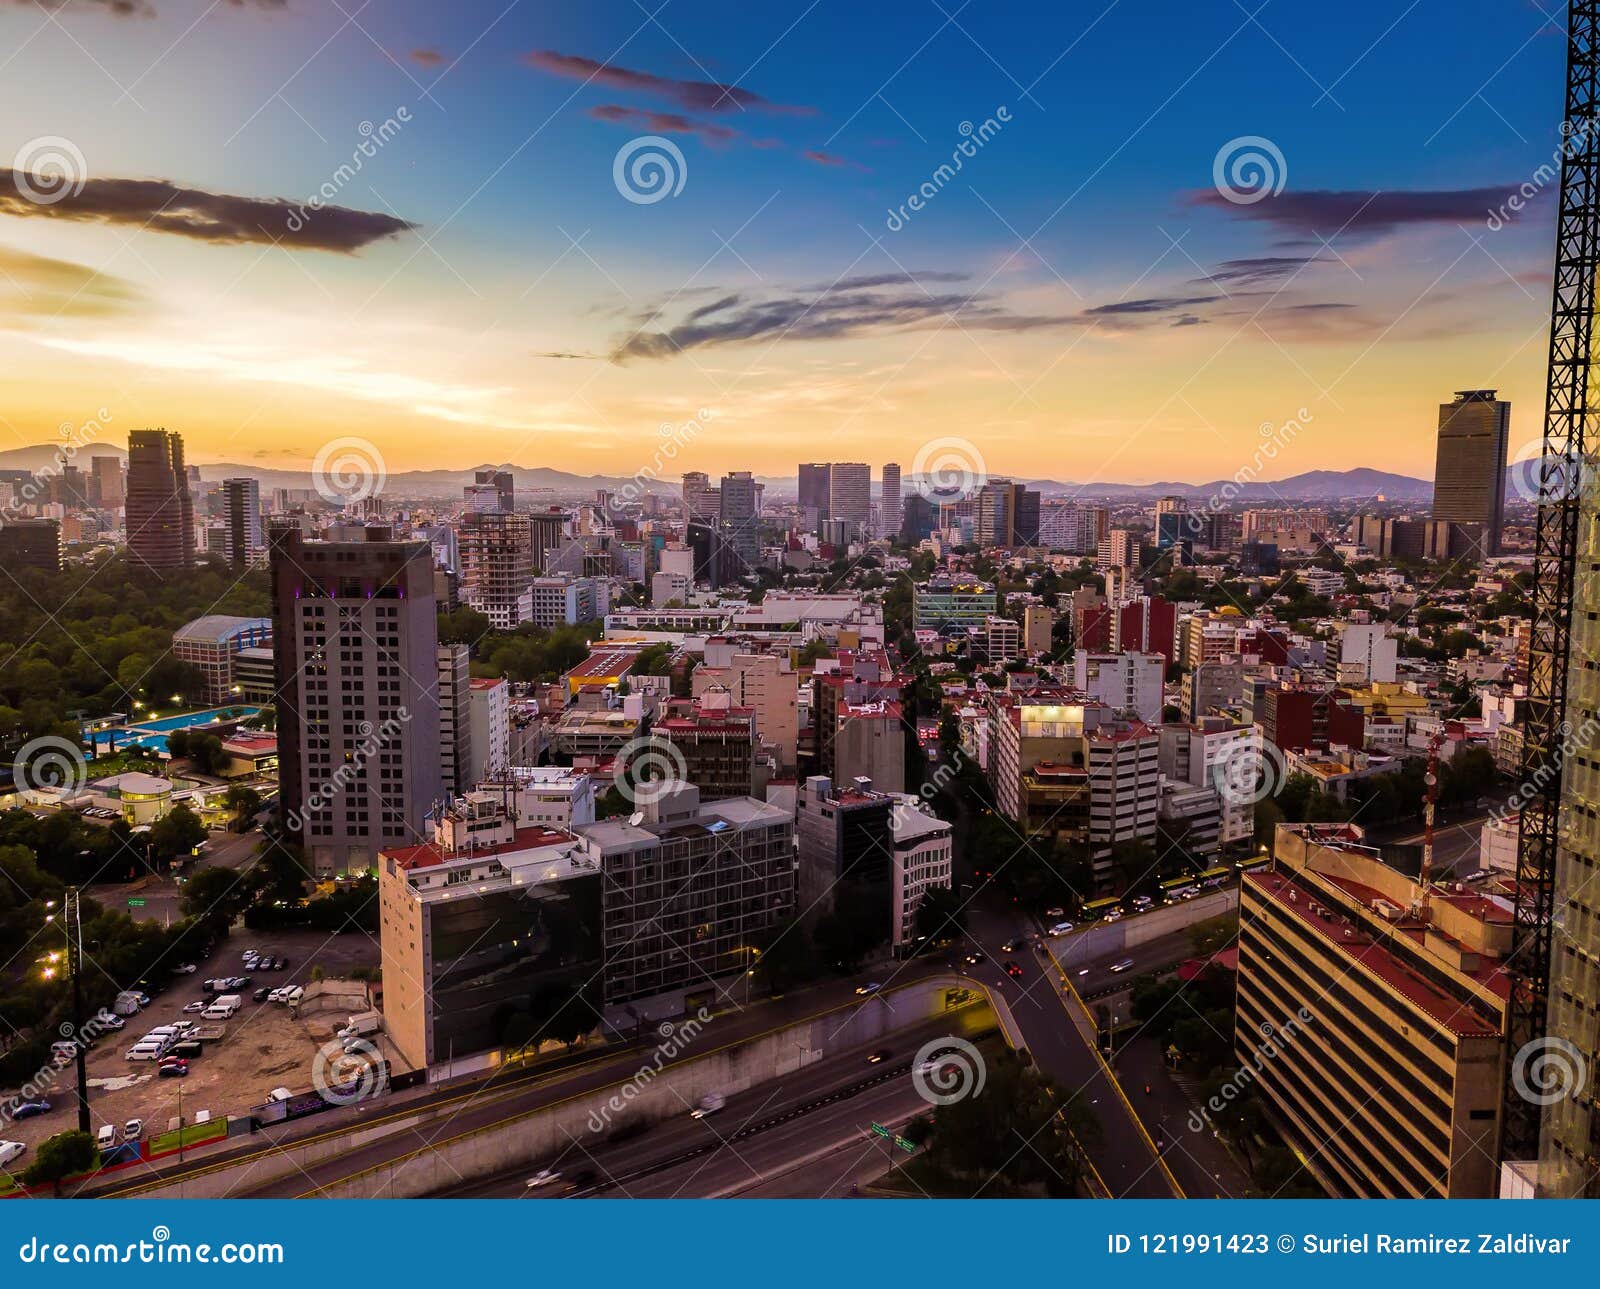 ciudad de mexico - reforma avenue sunset shot